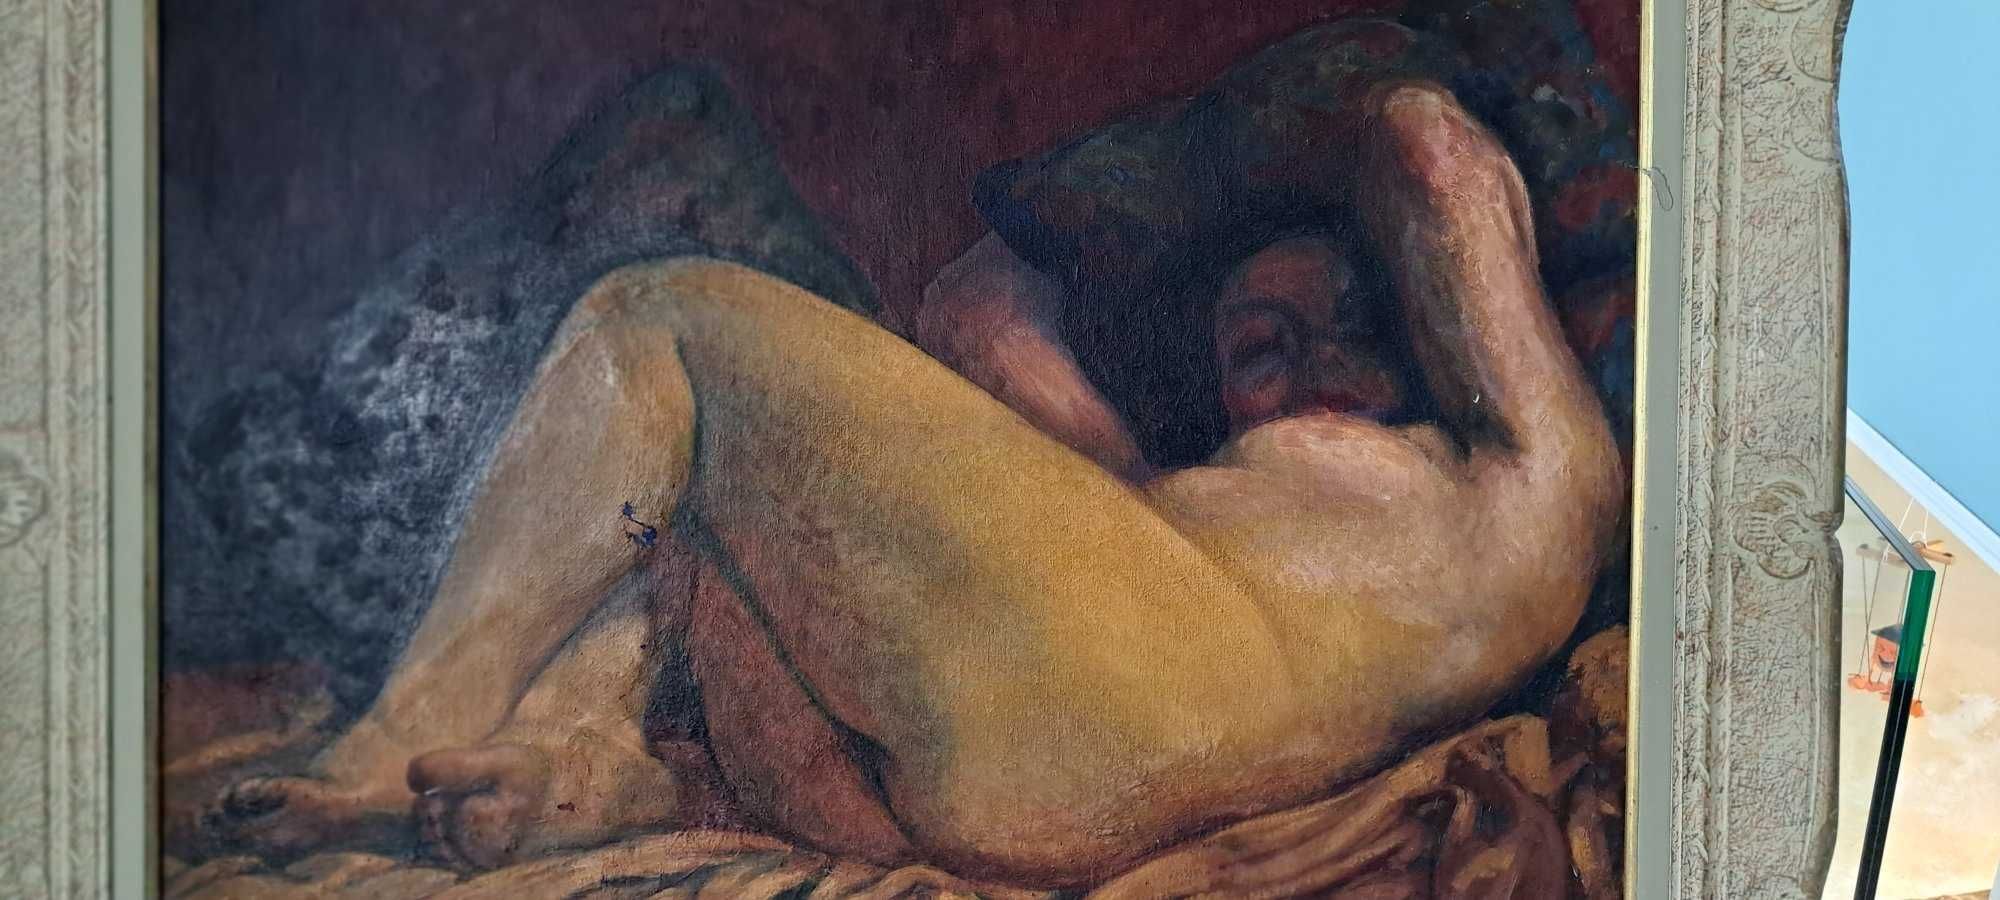 Edmond Bailleau - Nud, ulei pe panza, Franta